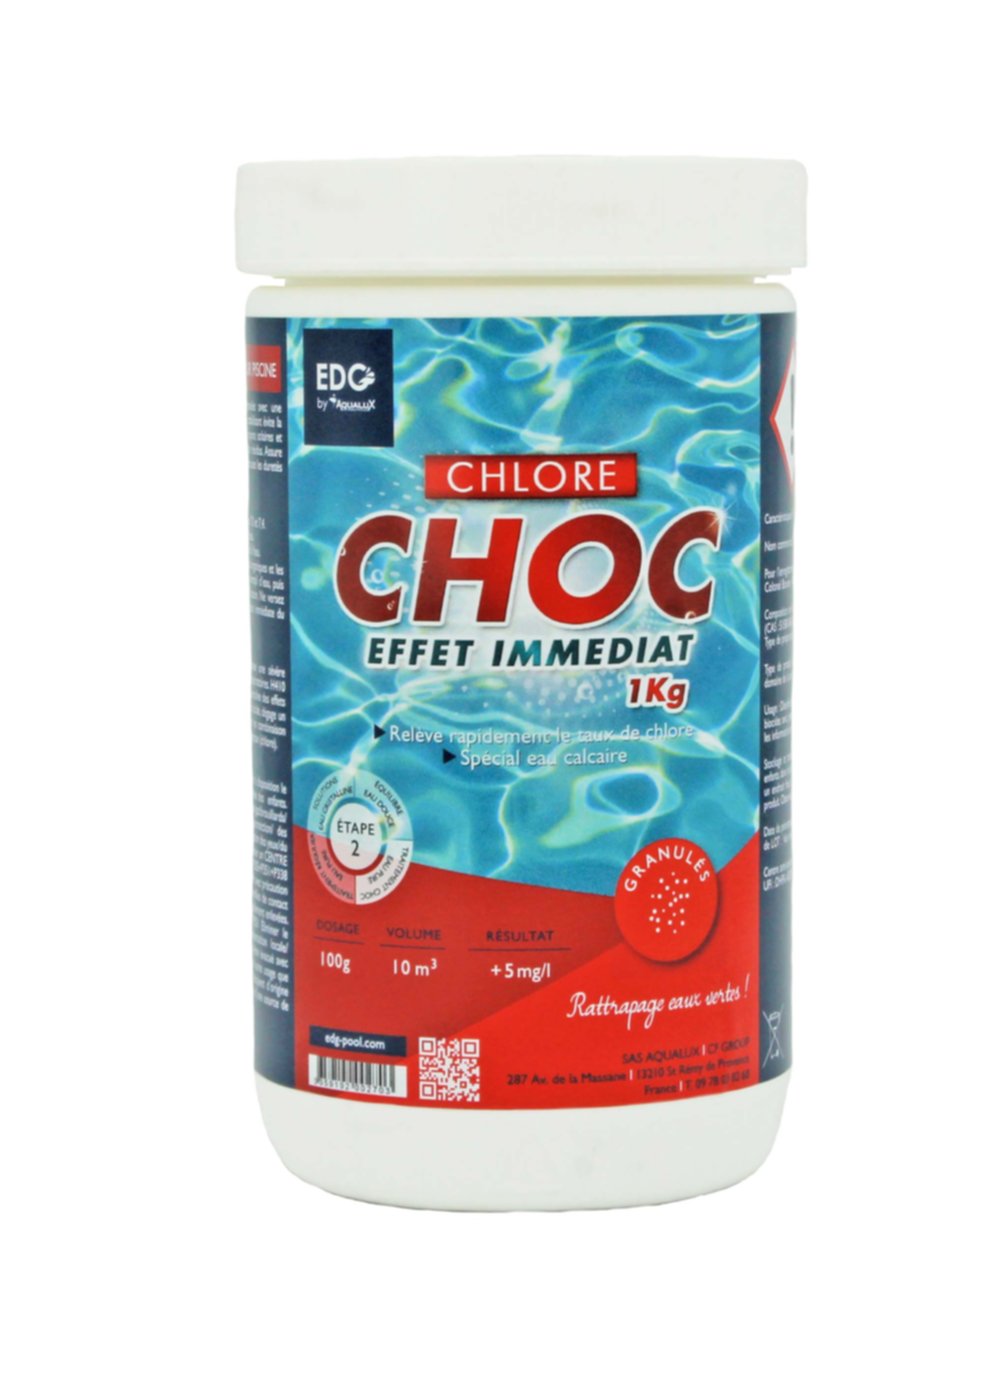 Chlore choc 1 kg - EDG by AQUALUX